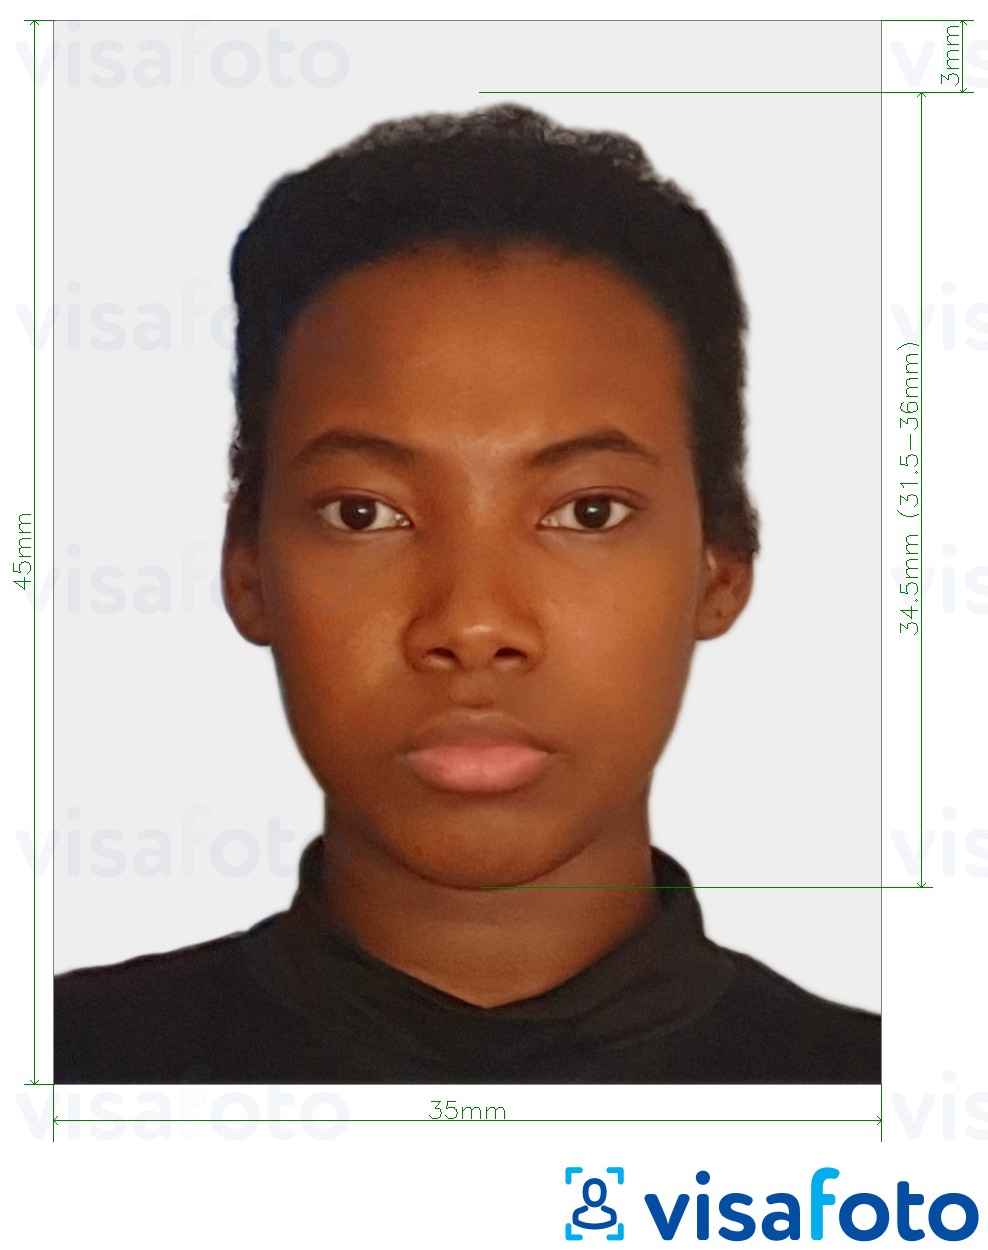 Esempio di foto per Gabon evisa foto 35x45 mm (3,5x4,5 cm) con specifiche delle dimensioni esatte